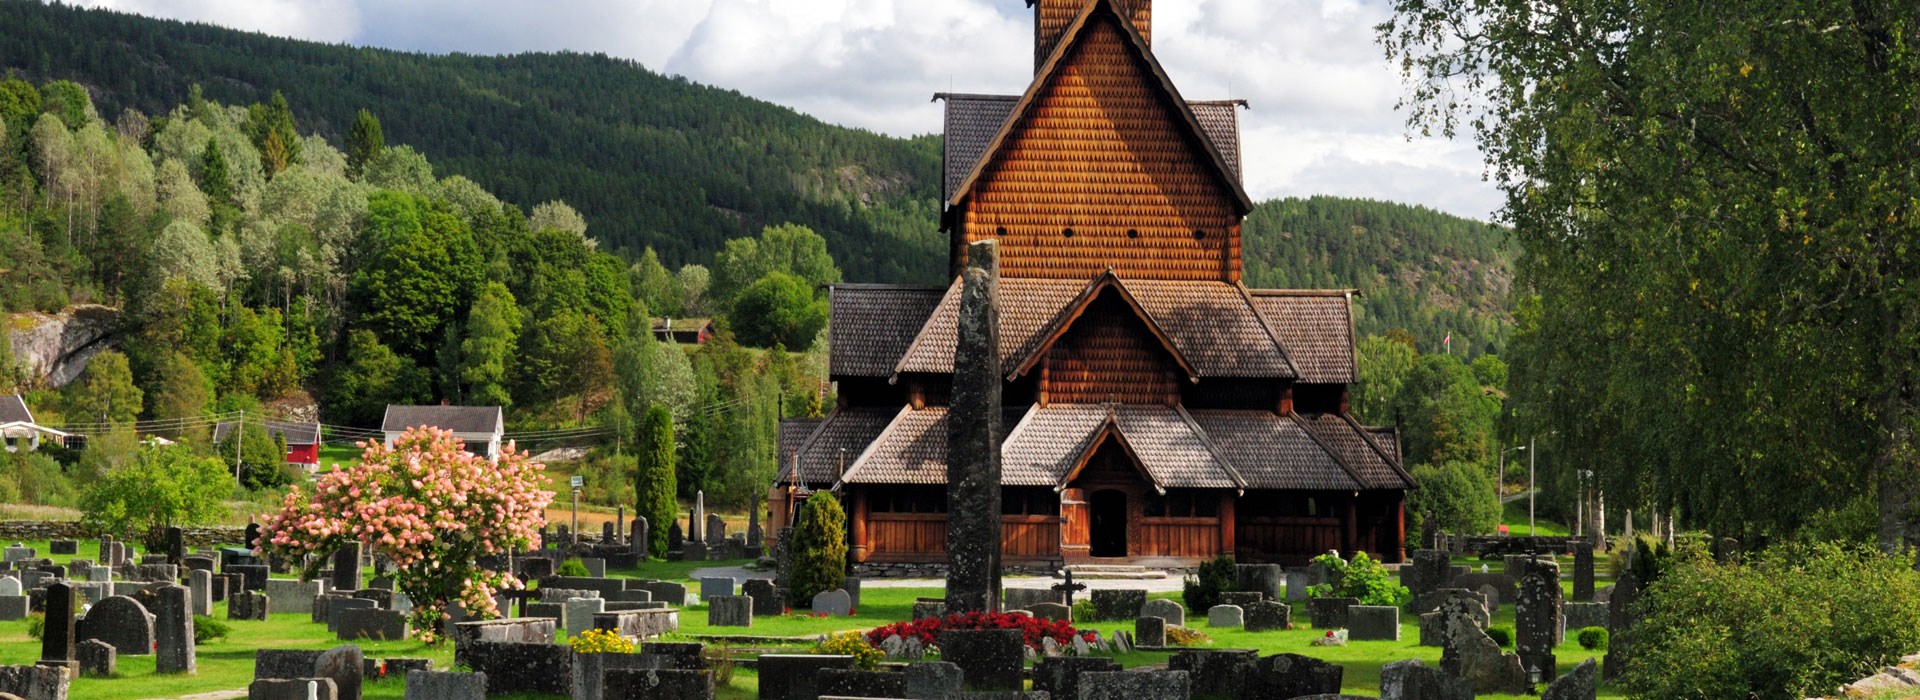 Visiter L'église d'Heddal - Norvège